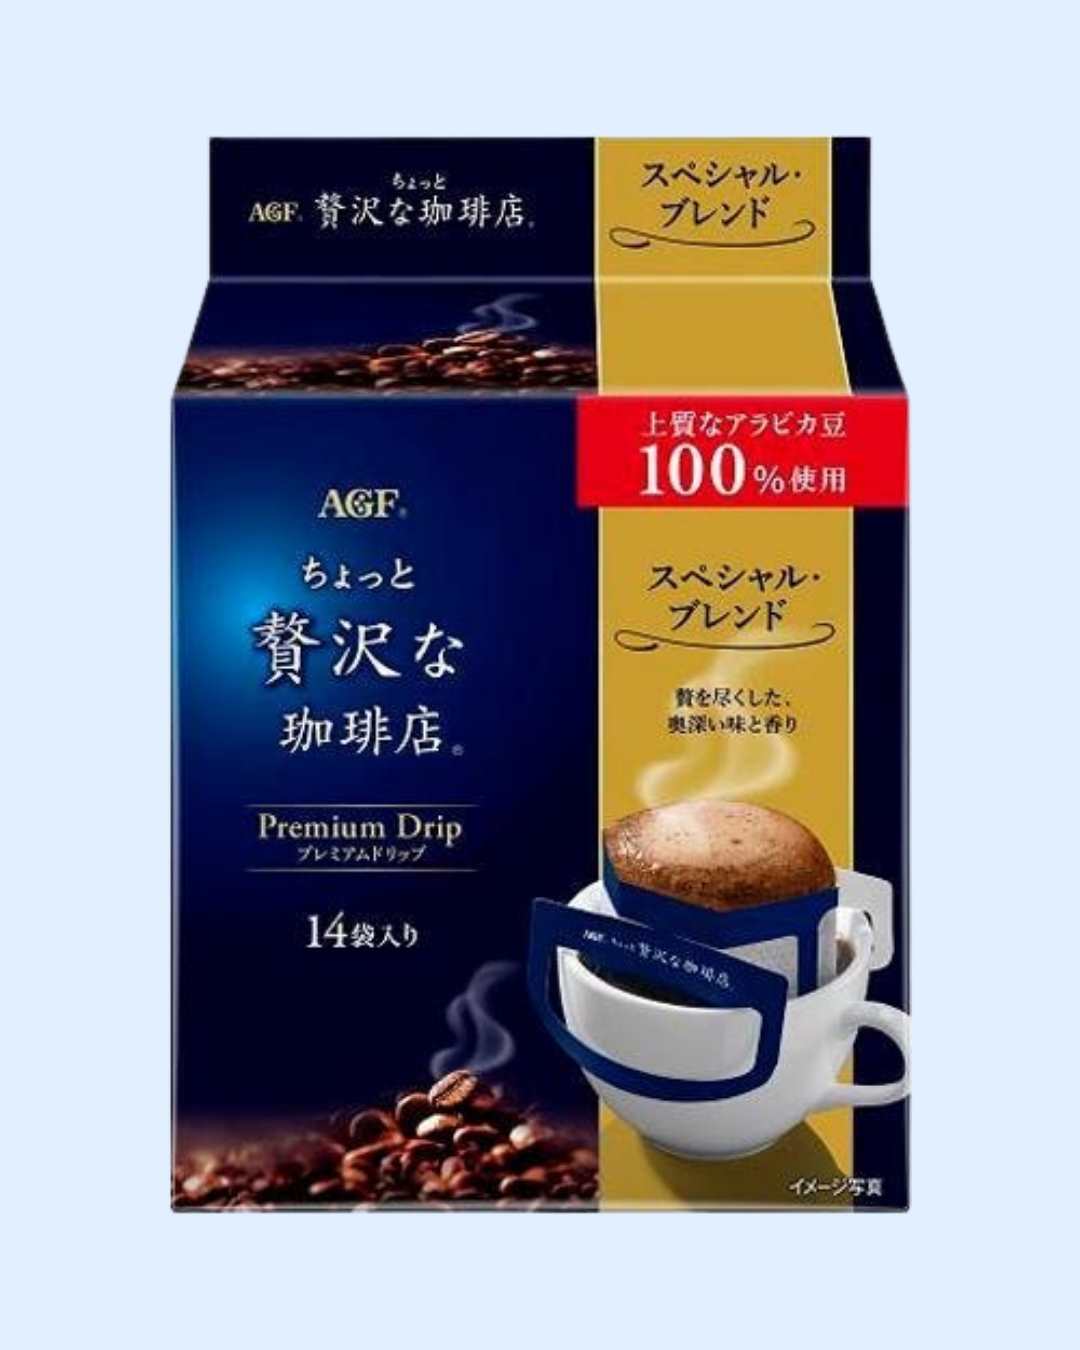 AGF Blendy Premium Drip Coffee